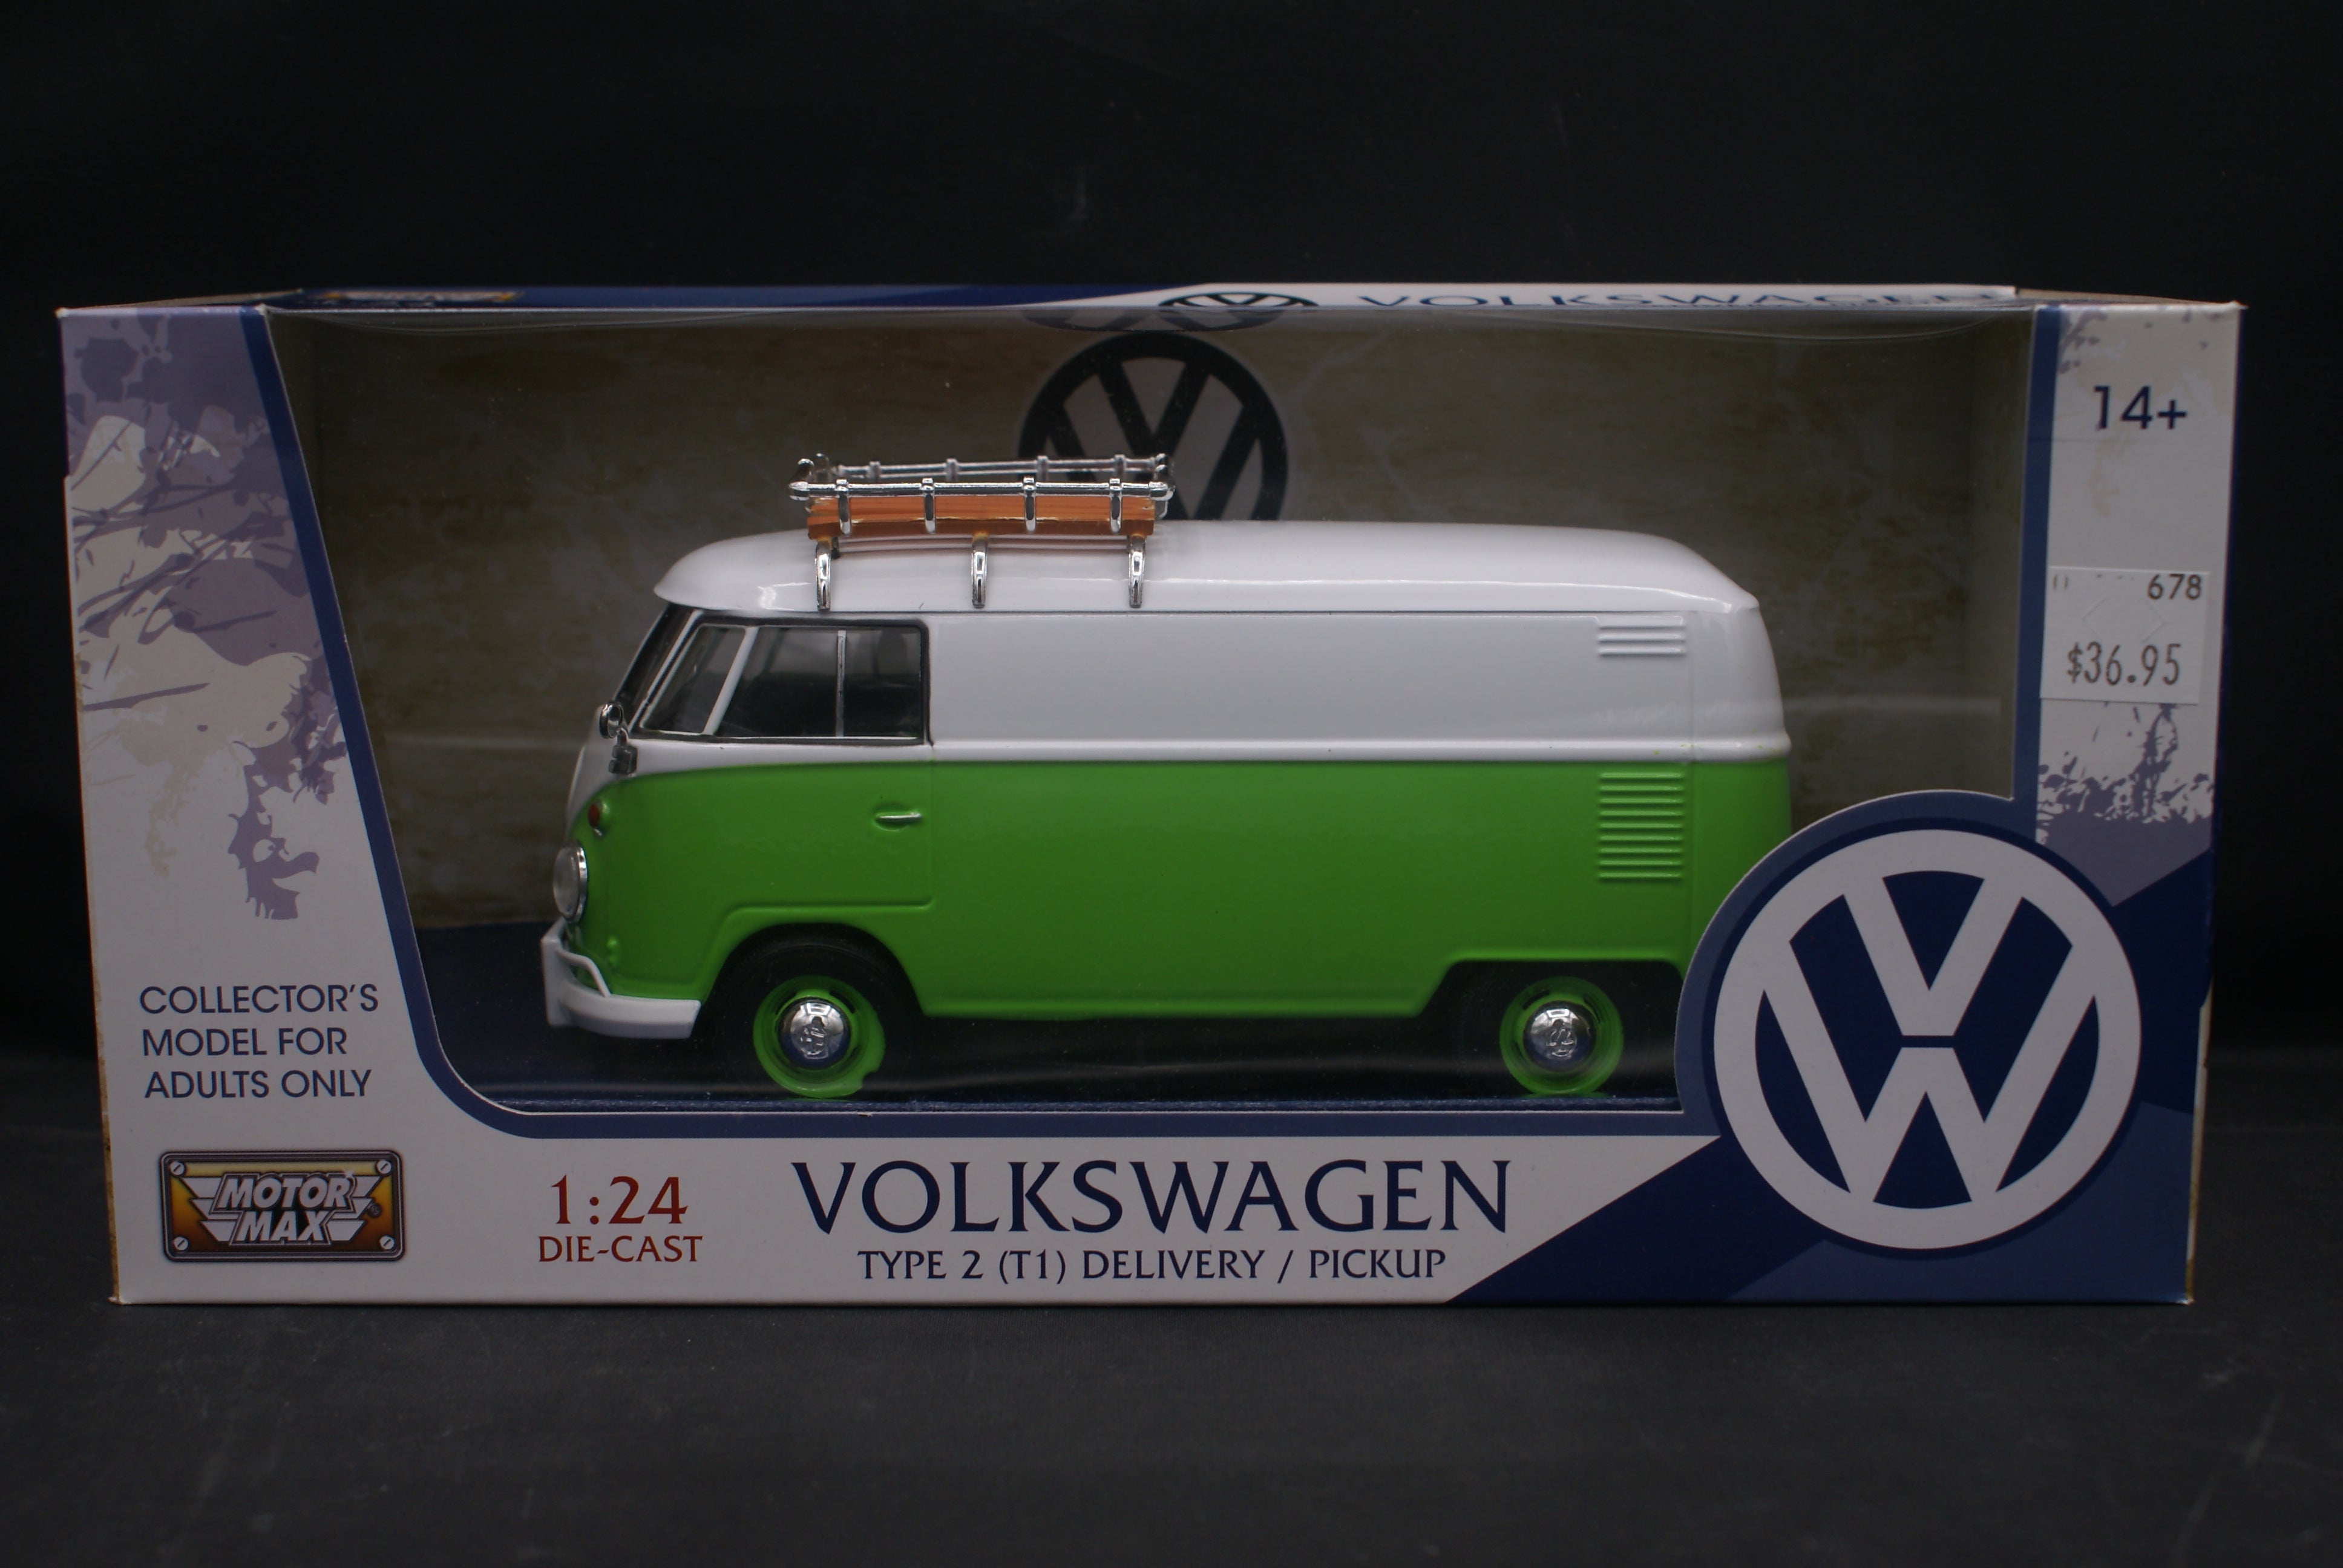 Volkswagen Delivery